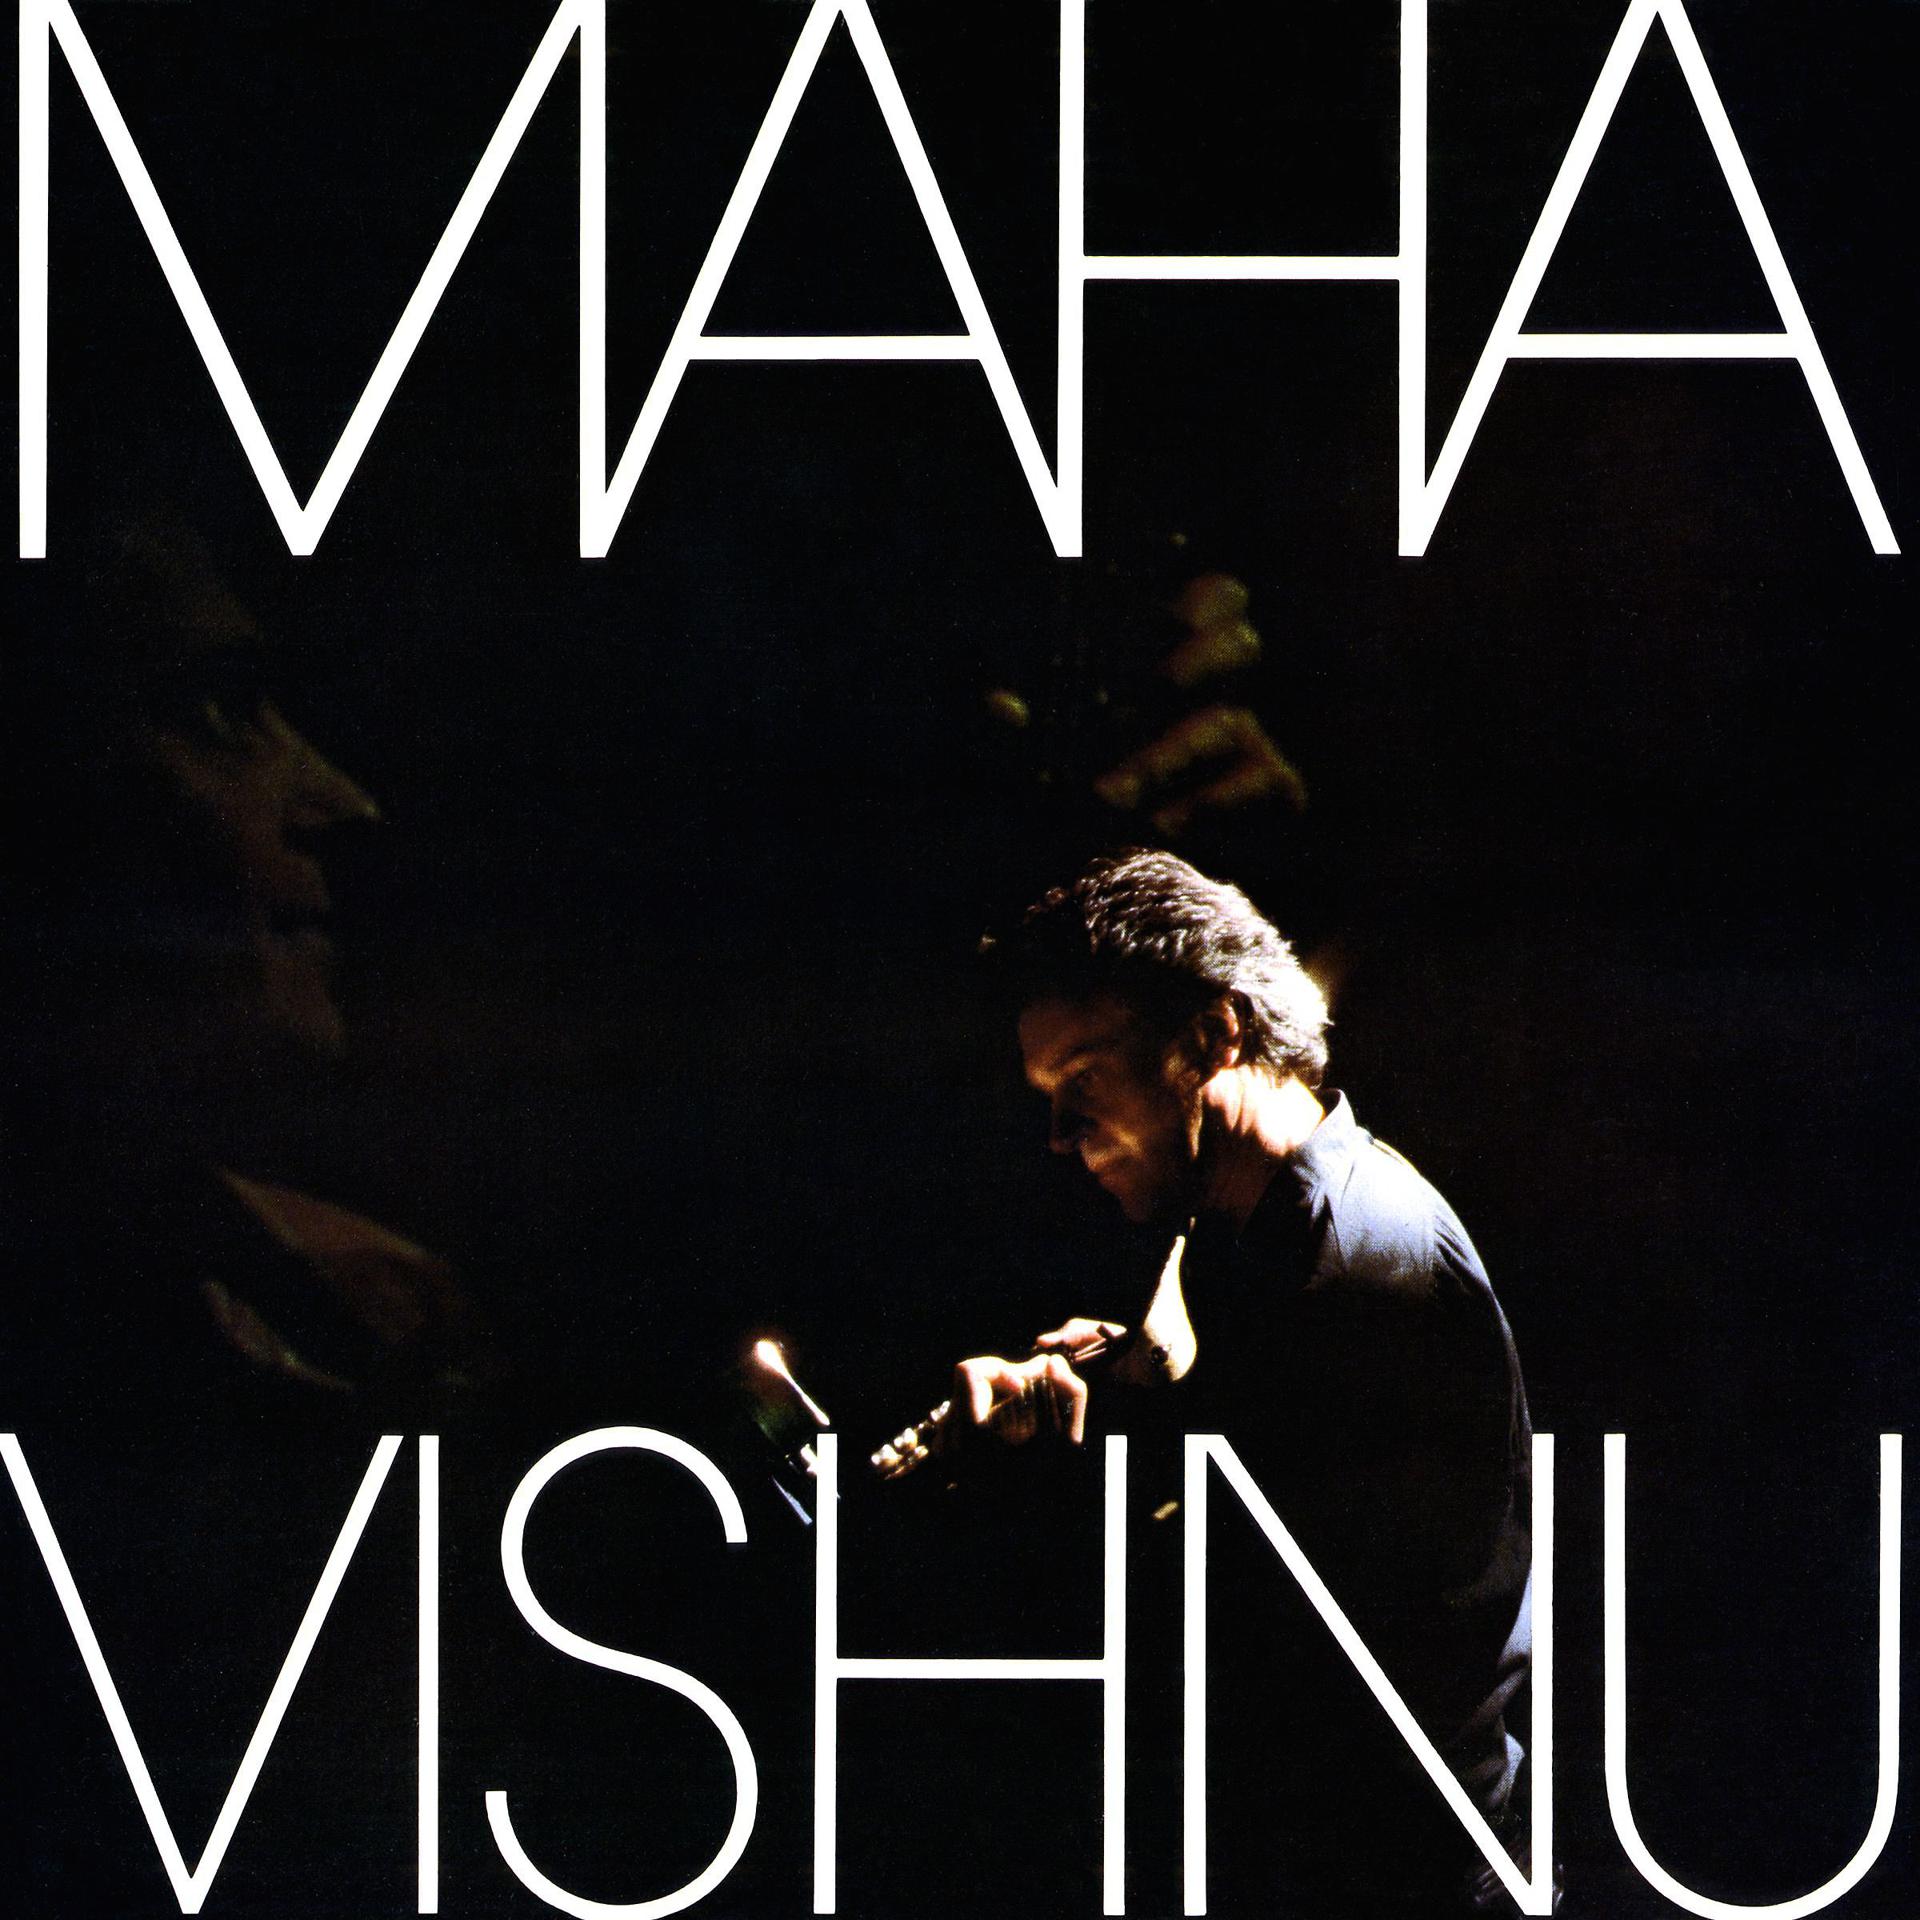 Mahavishnu orchestra